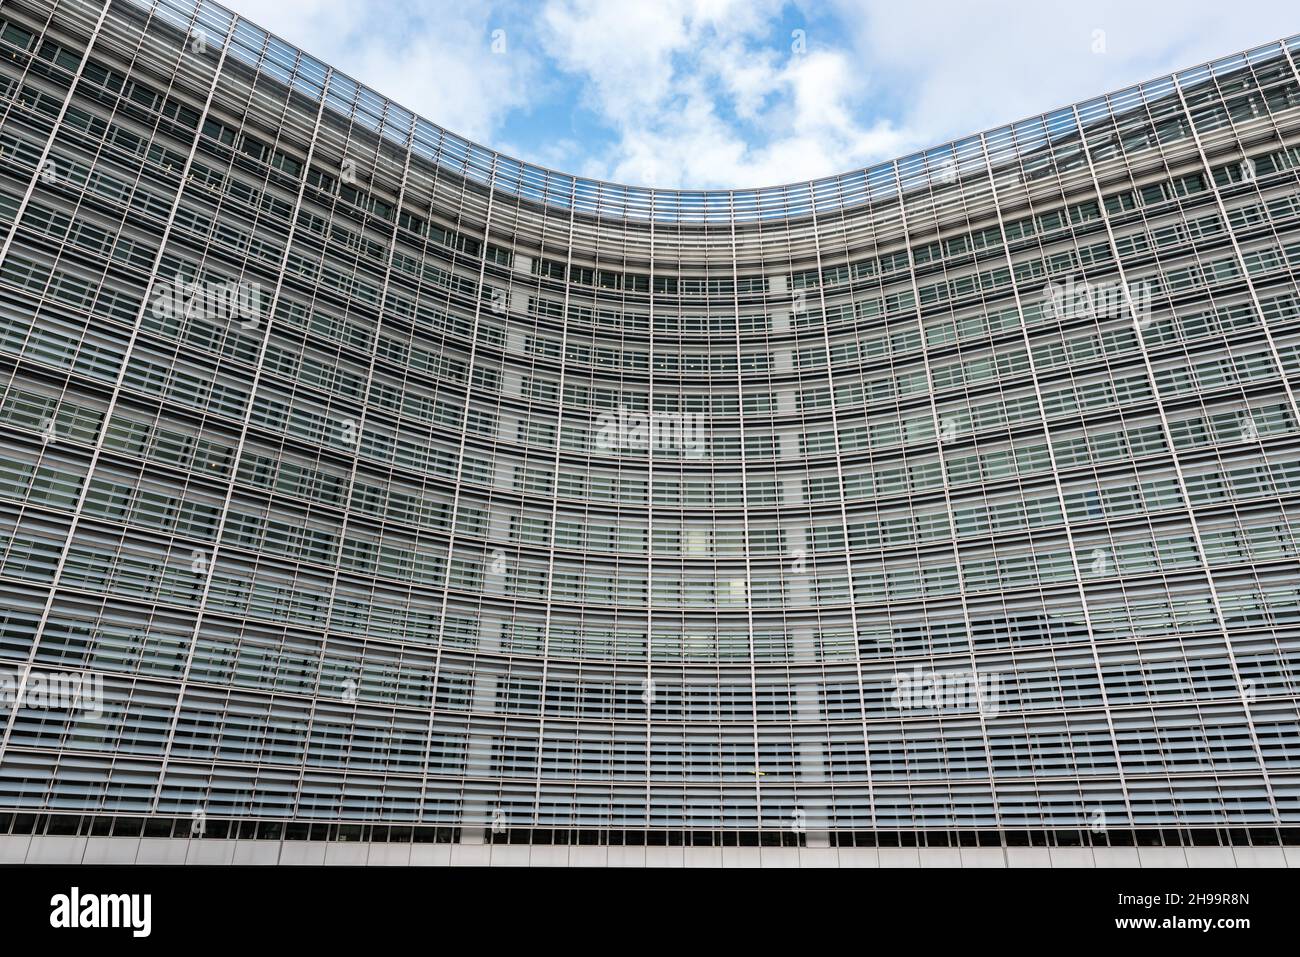 Bruxelles, Belgique - 02 15 2018: Siège de la Commission européenne dans le bâtiment Berlaymont Banque D'Images